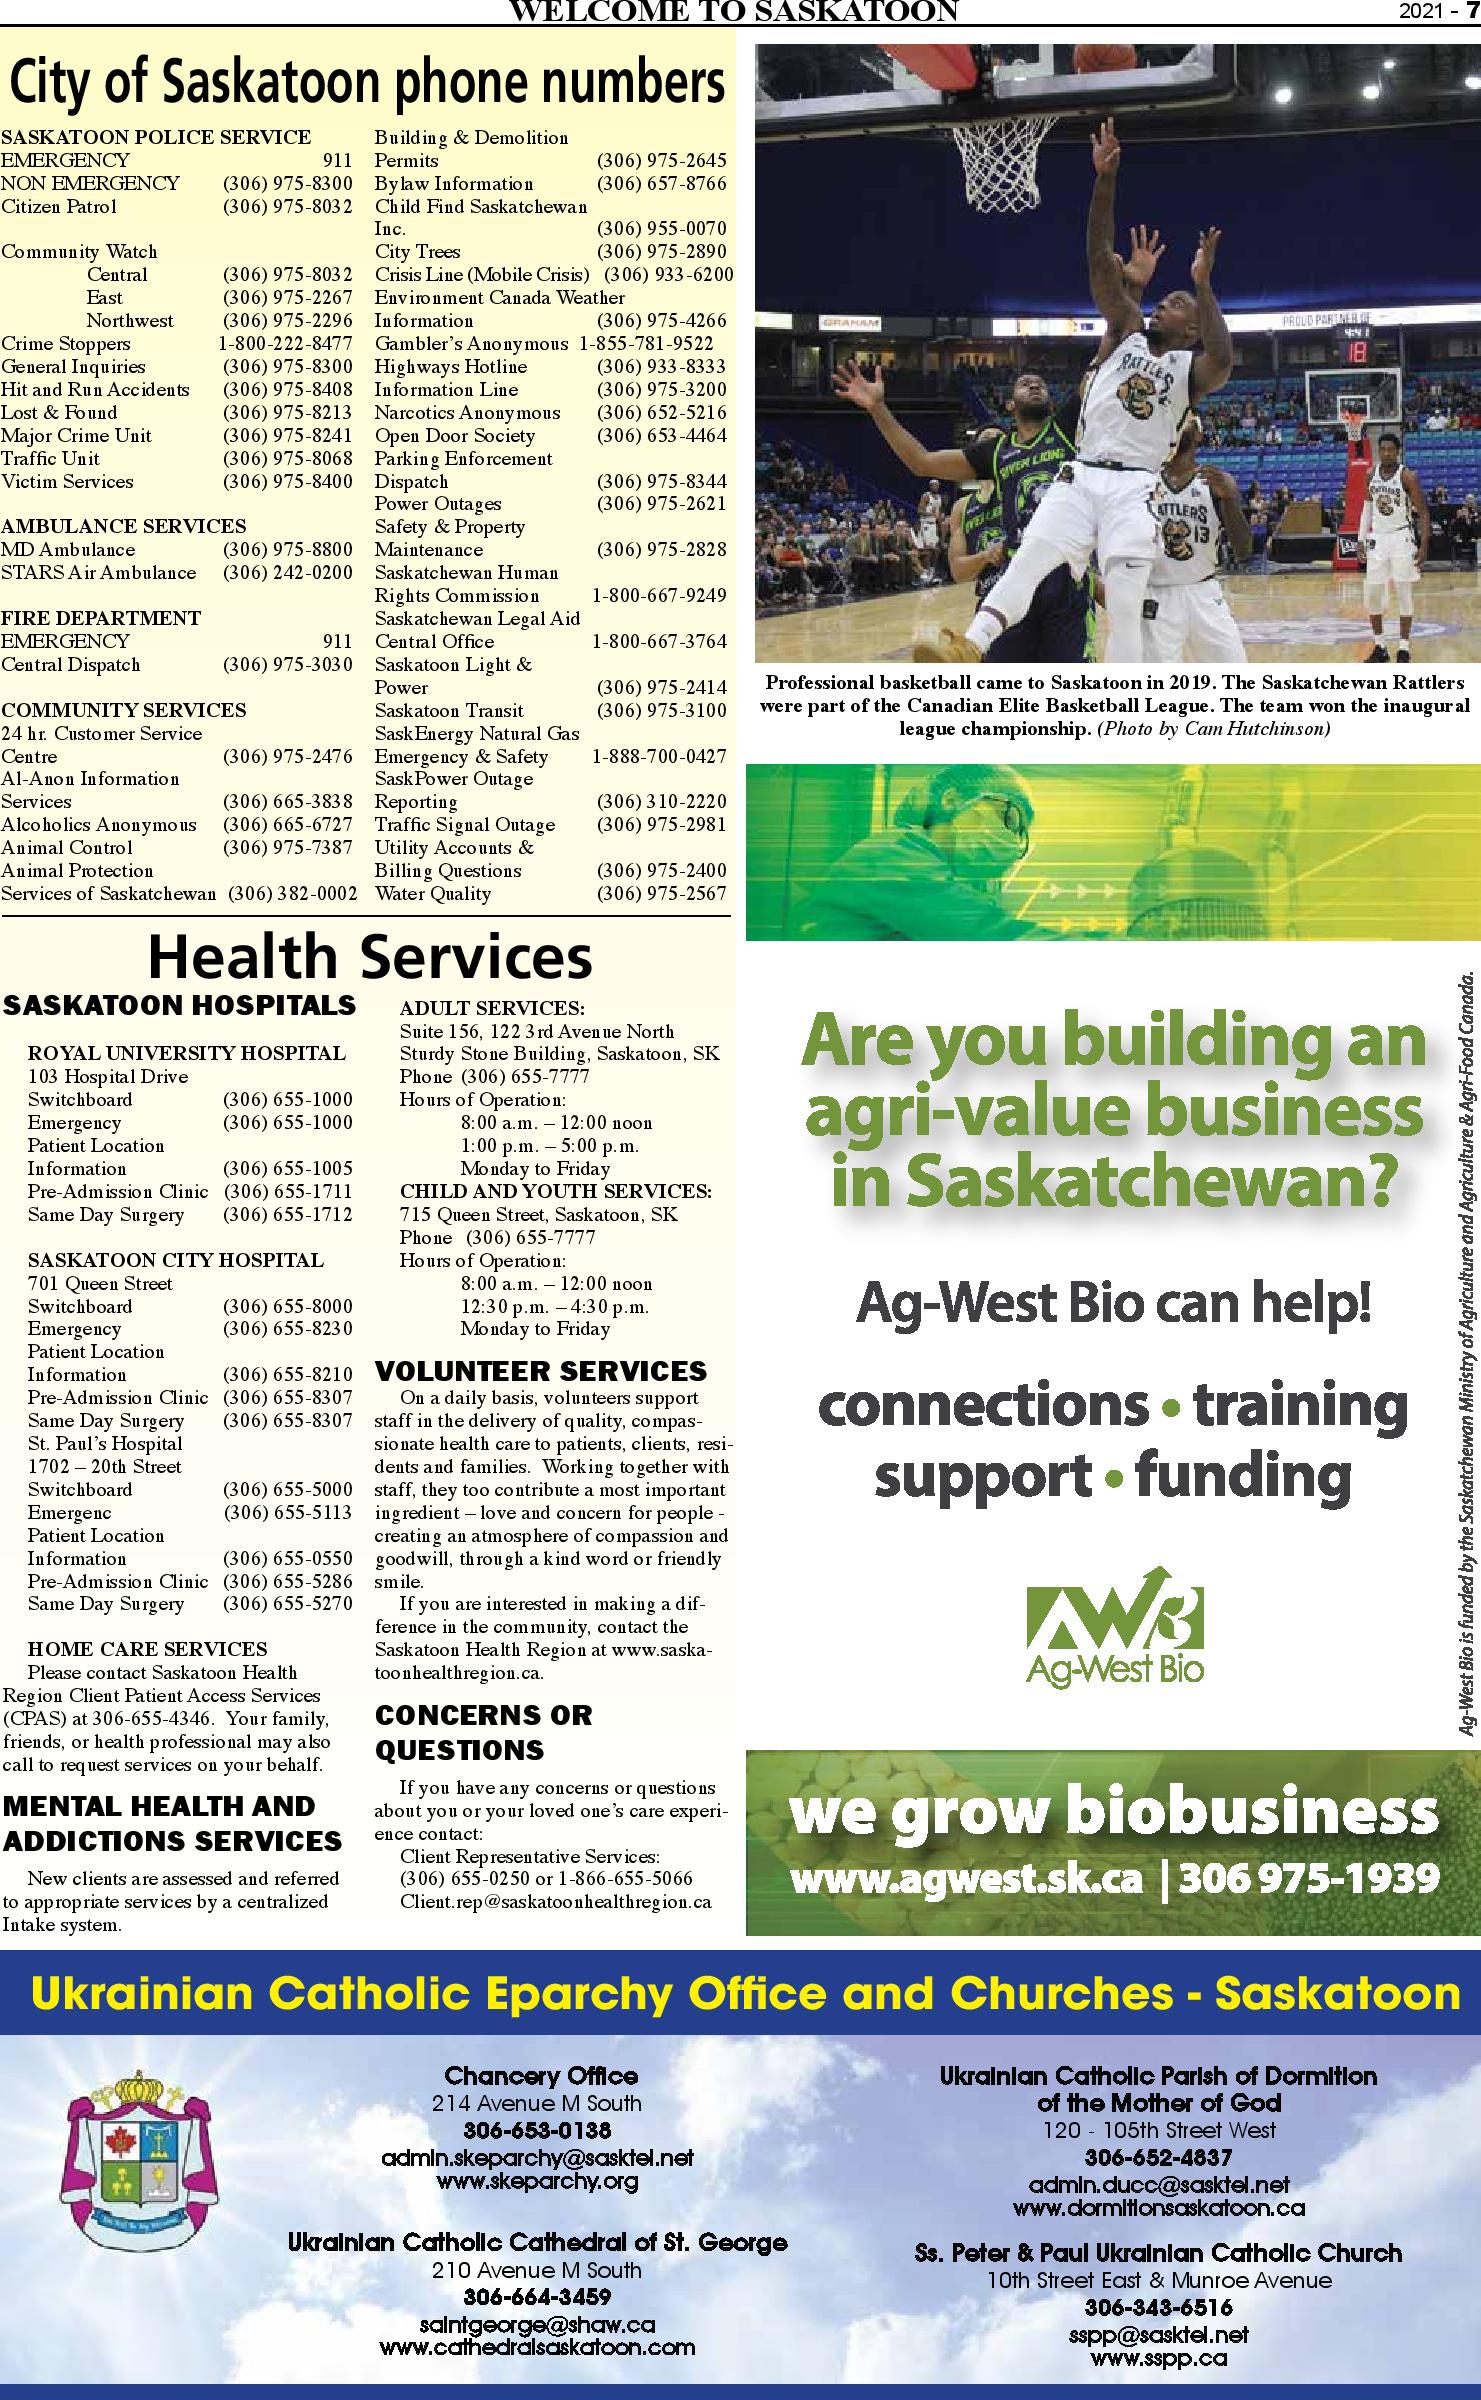 Welcome to Saskatoon_2021-page-007